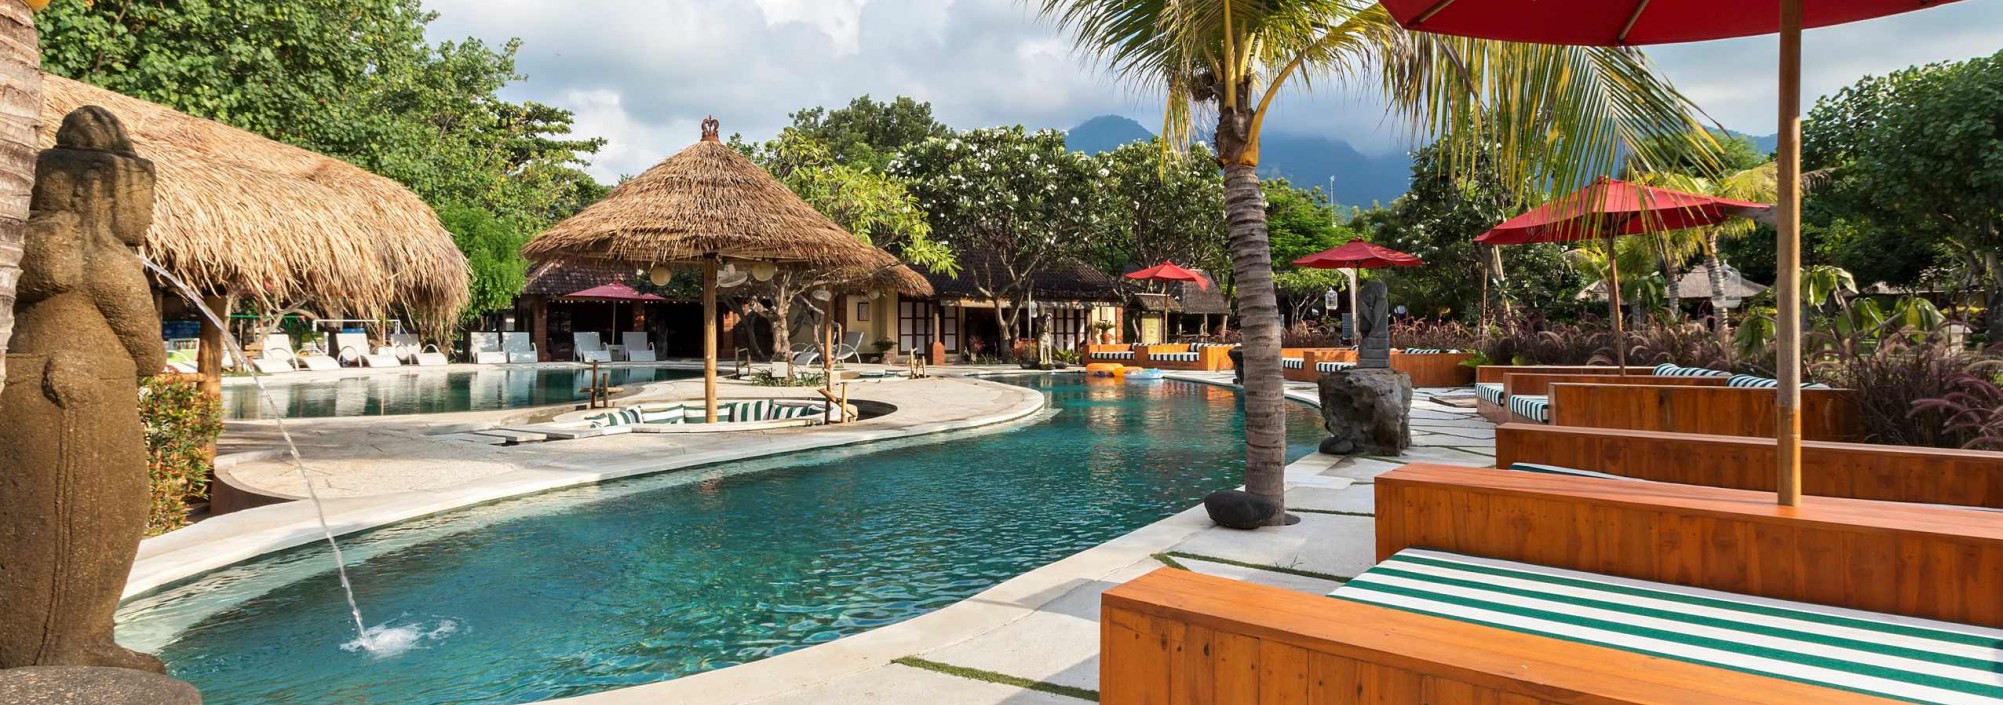  Taman Sari Bali  Resort Spa Hotels in Pemuteran 